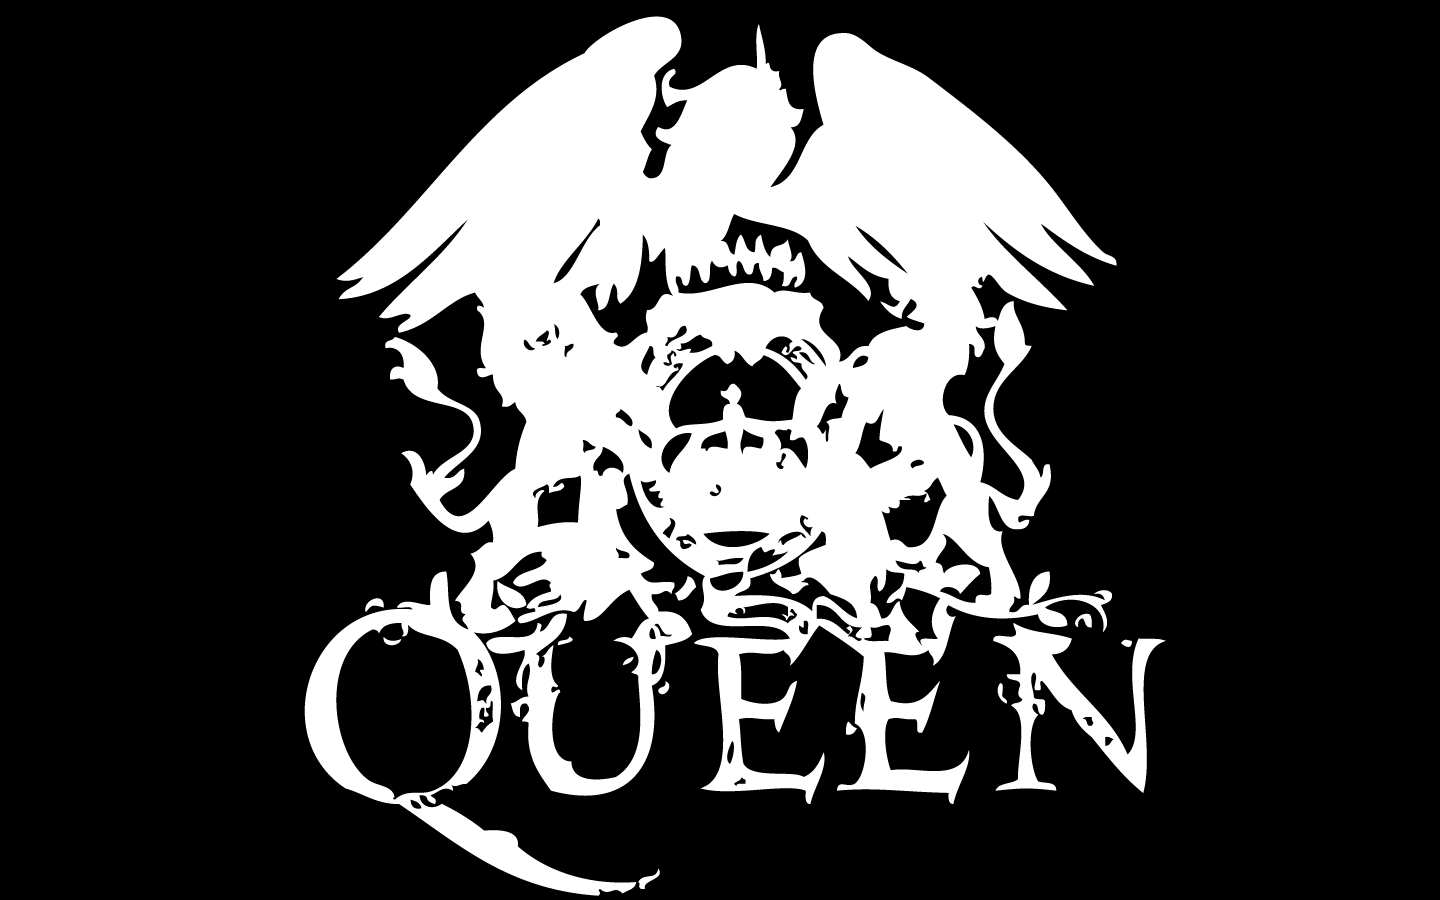 Queen wallpapers hd free download